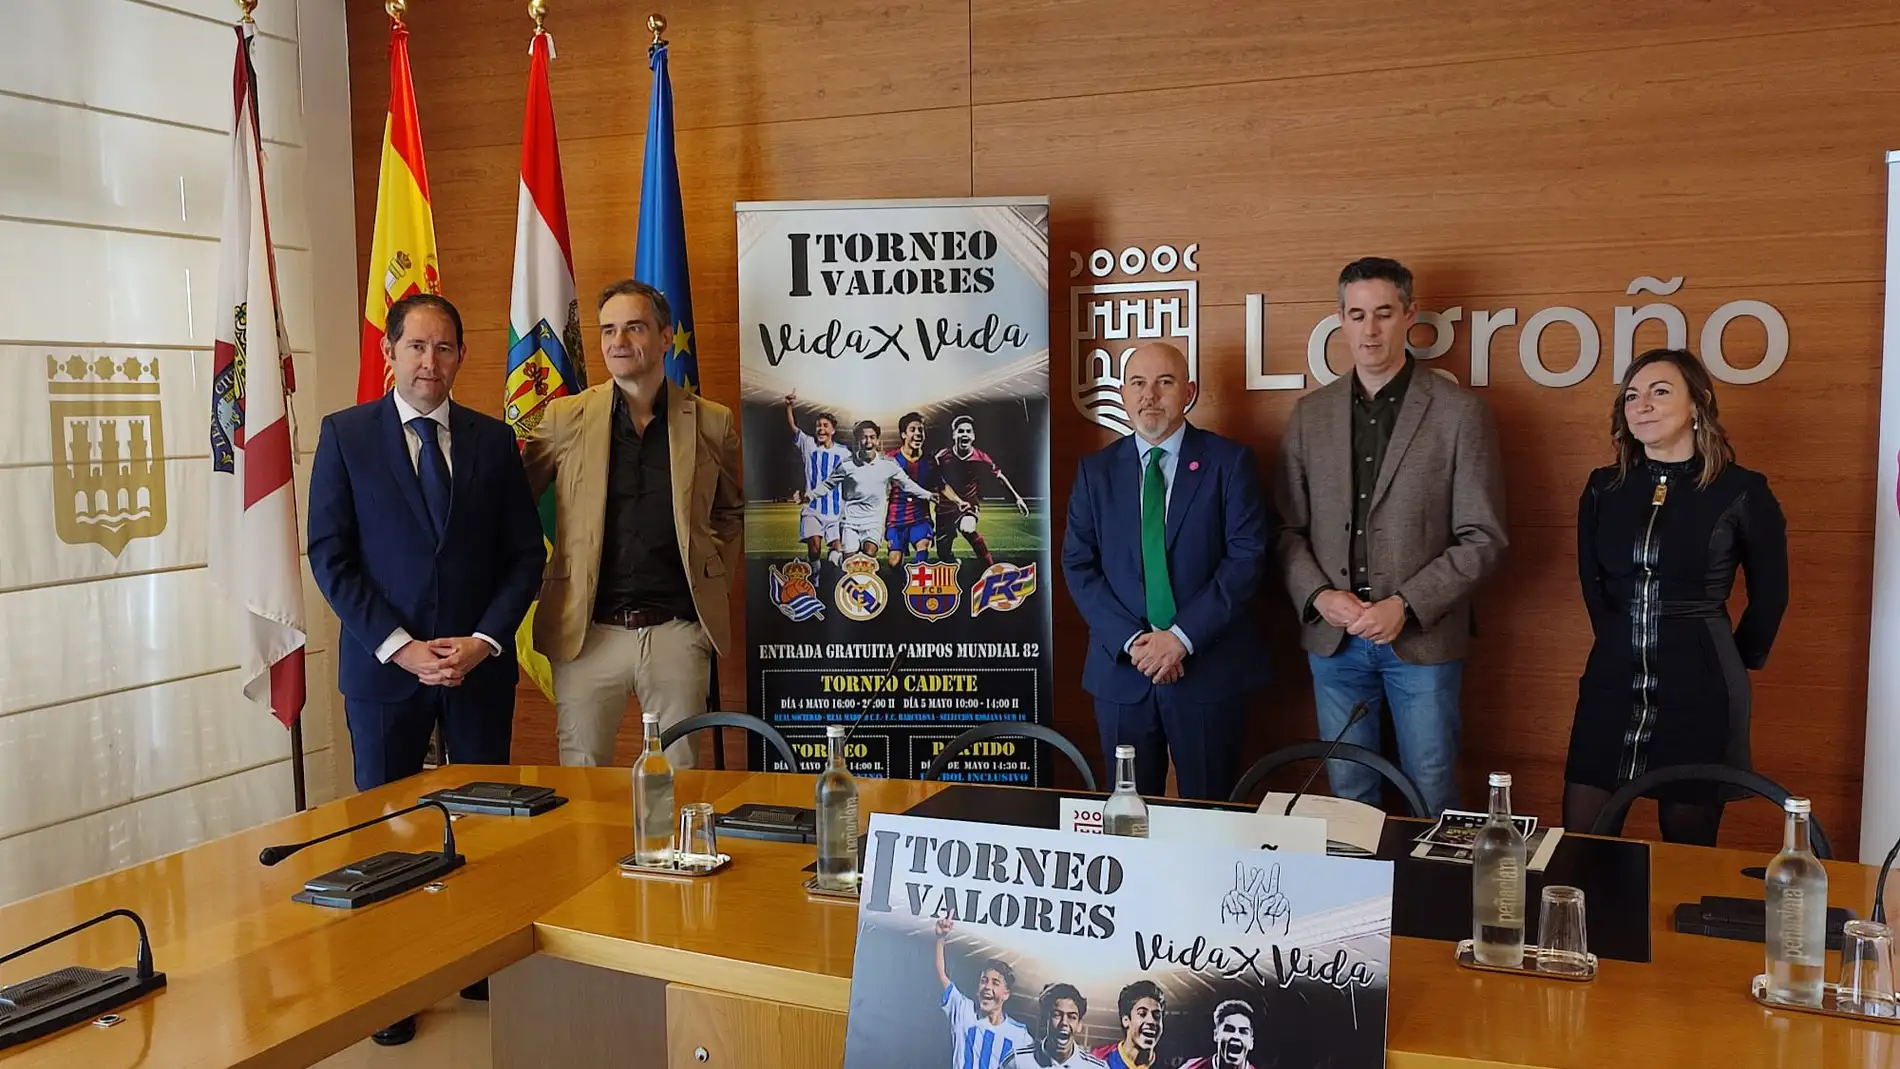 El I Torneo Valores Vida por Vida congrega en Logroño a las canteras de Real Madrid, Barcelona y Real Sociedad